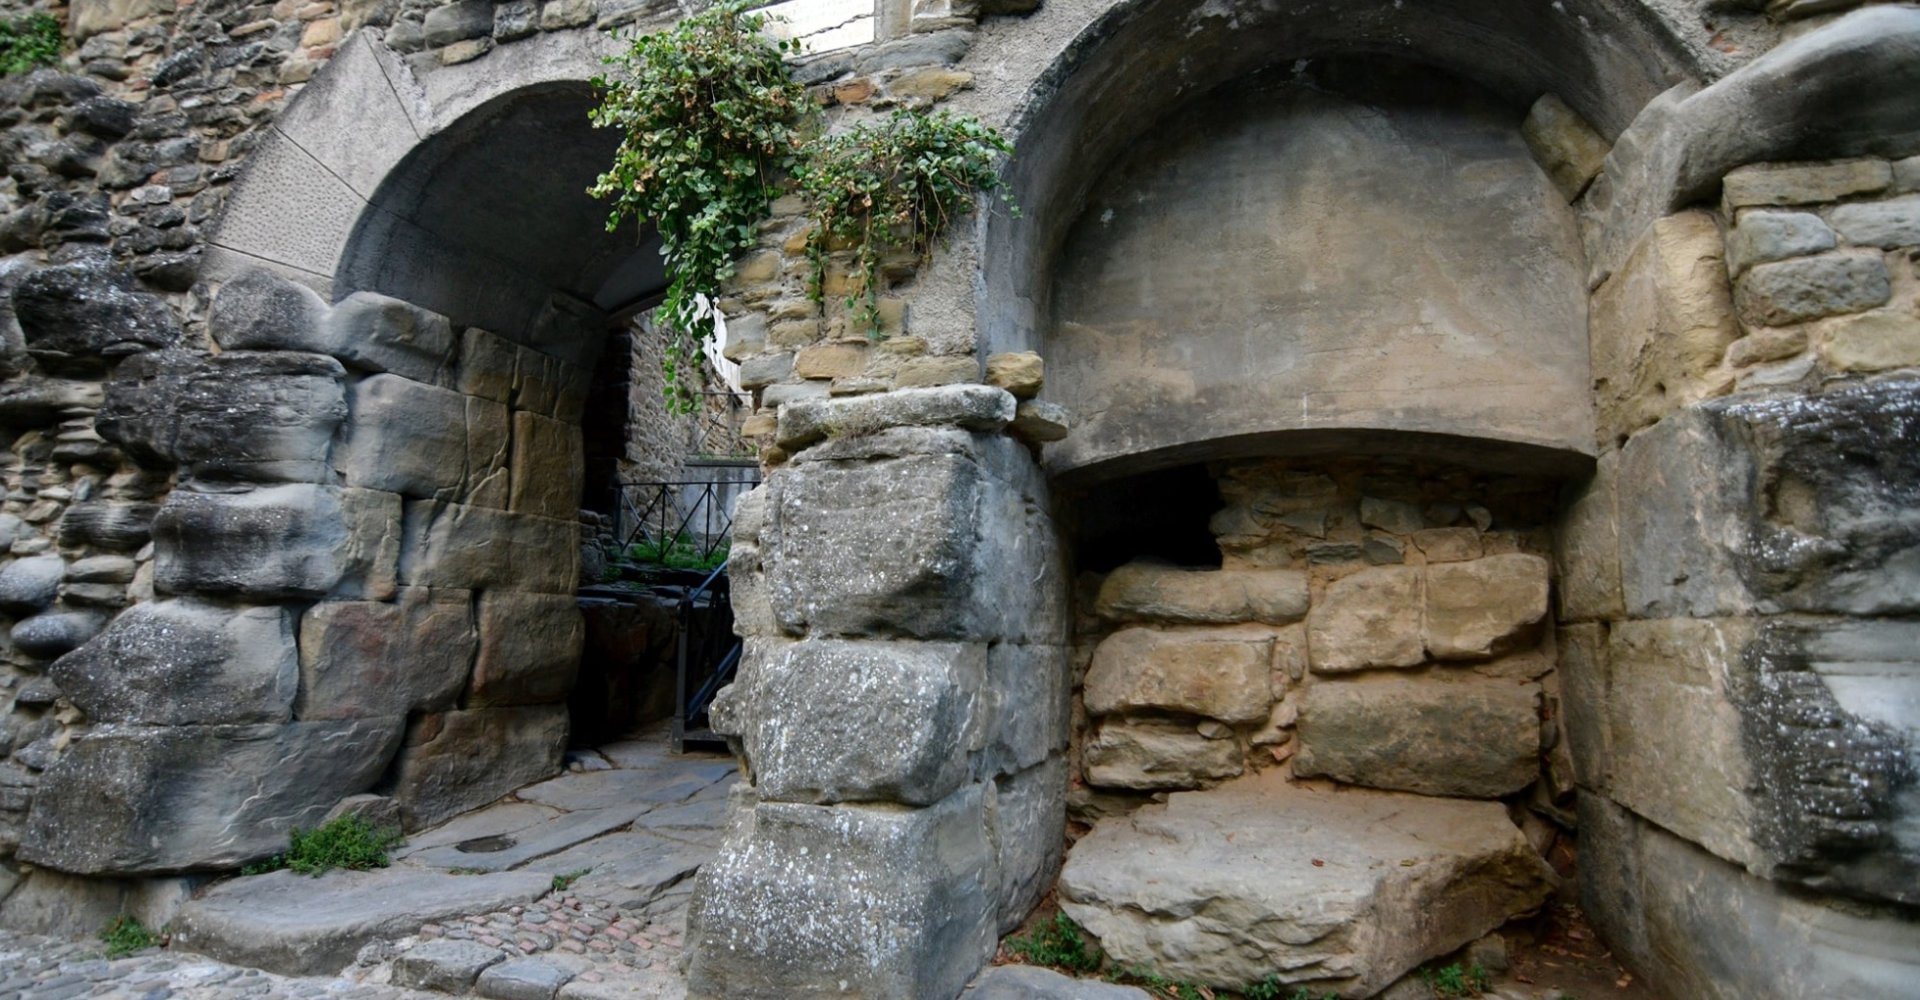 Porta Bifora in Cortona